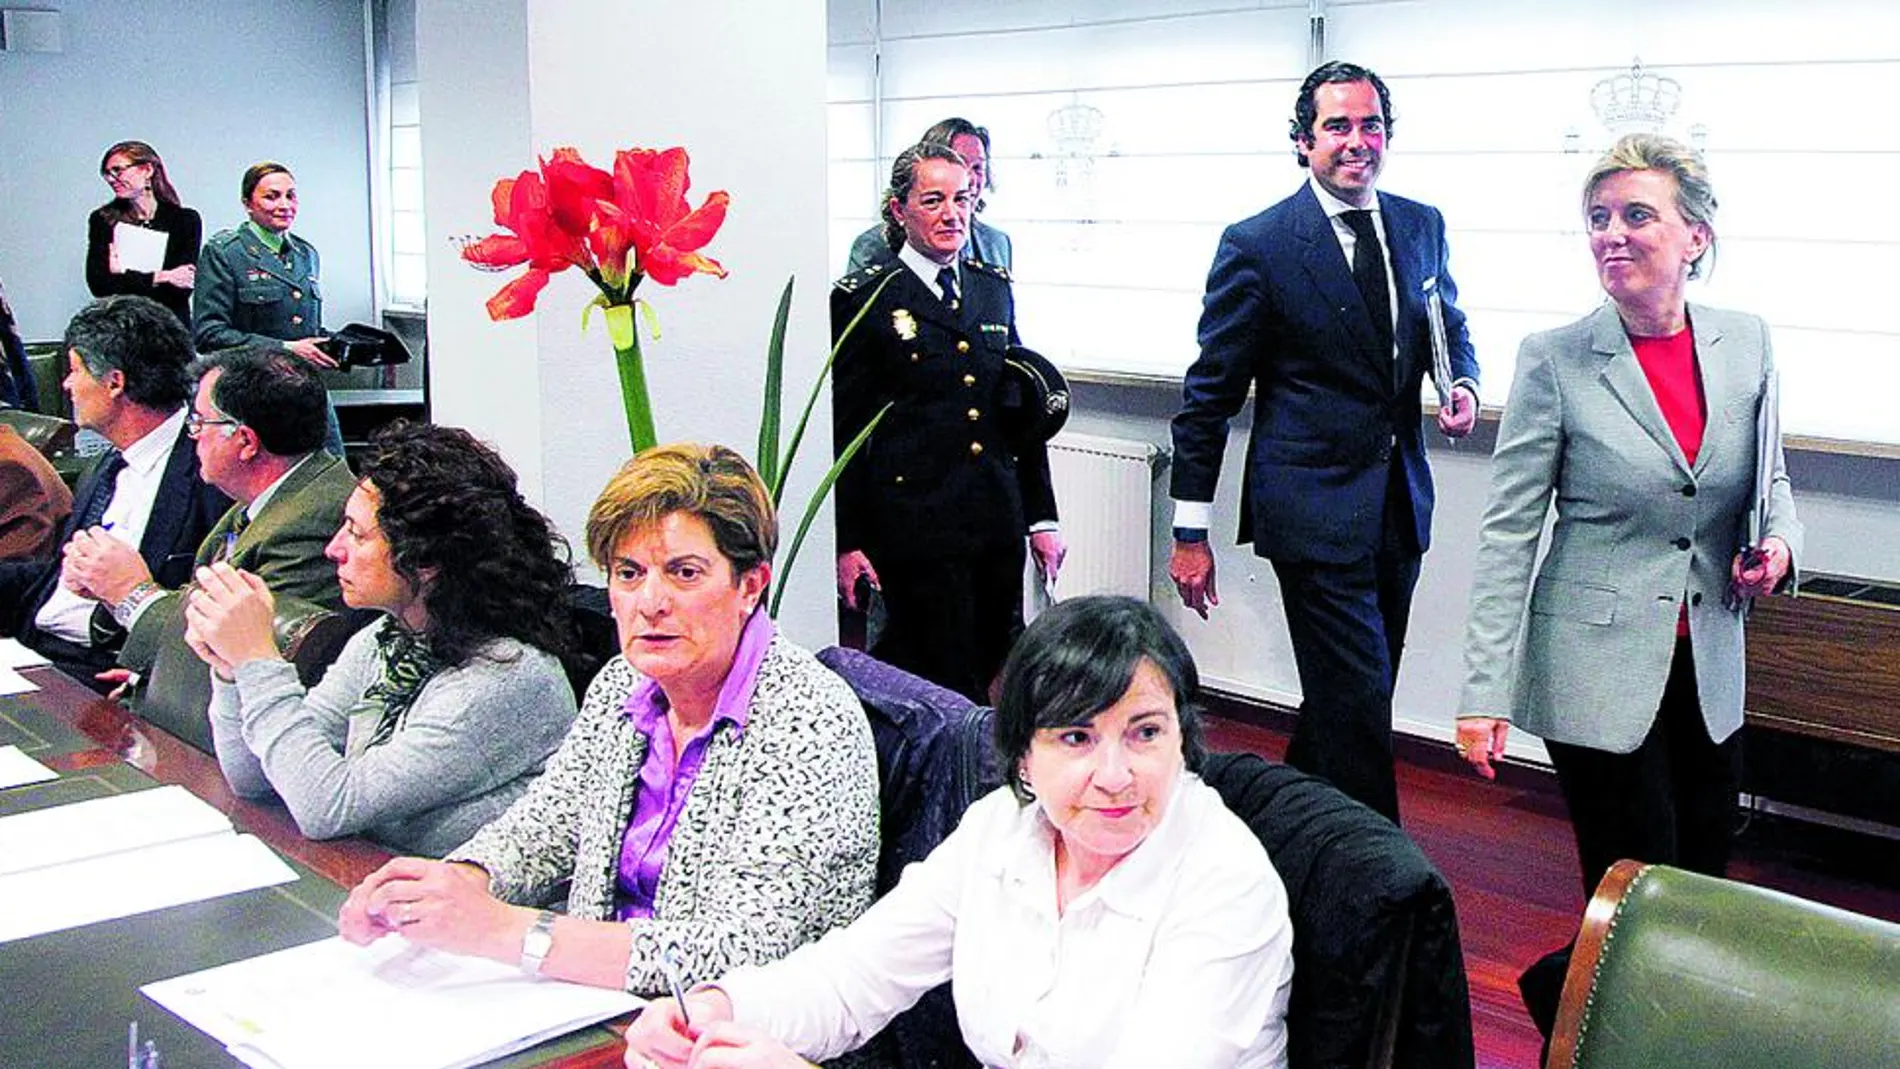 La delegada del Gobierno en Castilla y León, María José Salgueiro, momentos antes de inaugurar en Valladolid la jornada sobre igualdad de género en la Administración General del Estado